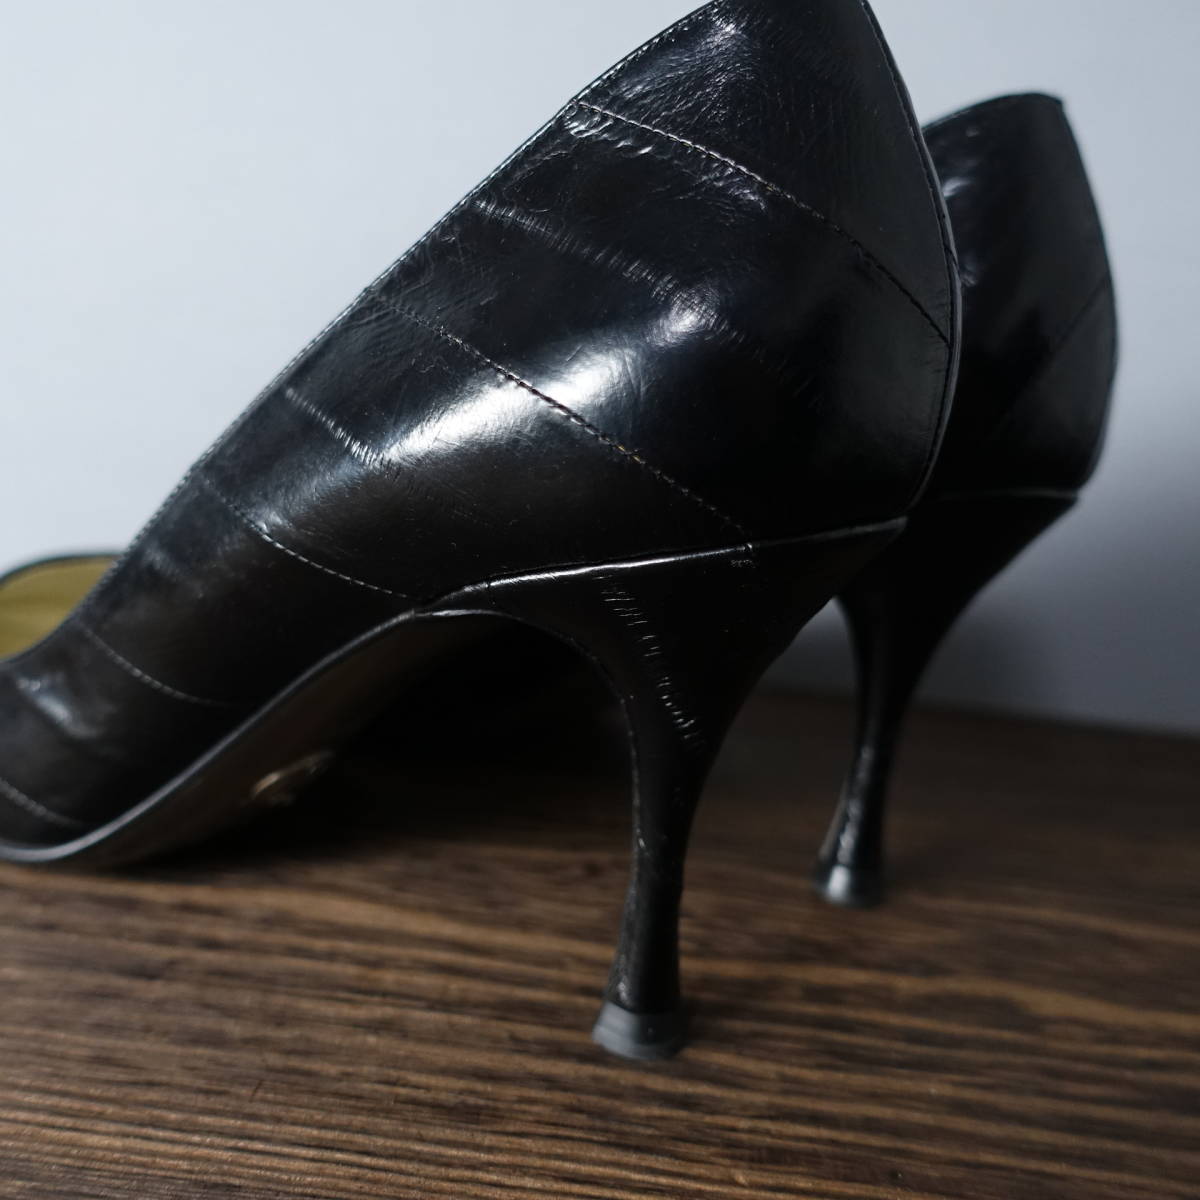 DOLCE&GABBANA/ Dolce & Gabbana /38.5/ Италия производства / высокий каблук туфли-лодочки / черный / чёрный / женский / обувь / обувь / Dolce&Gabbana 